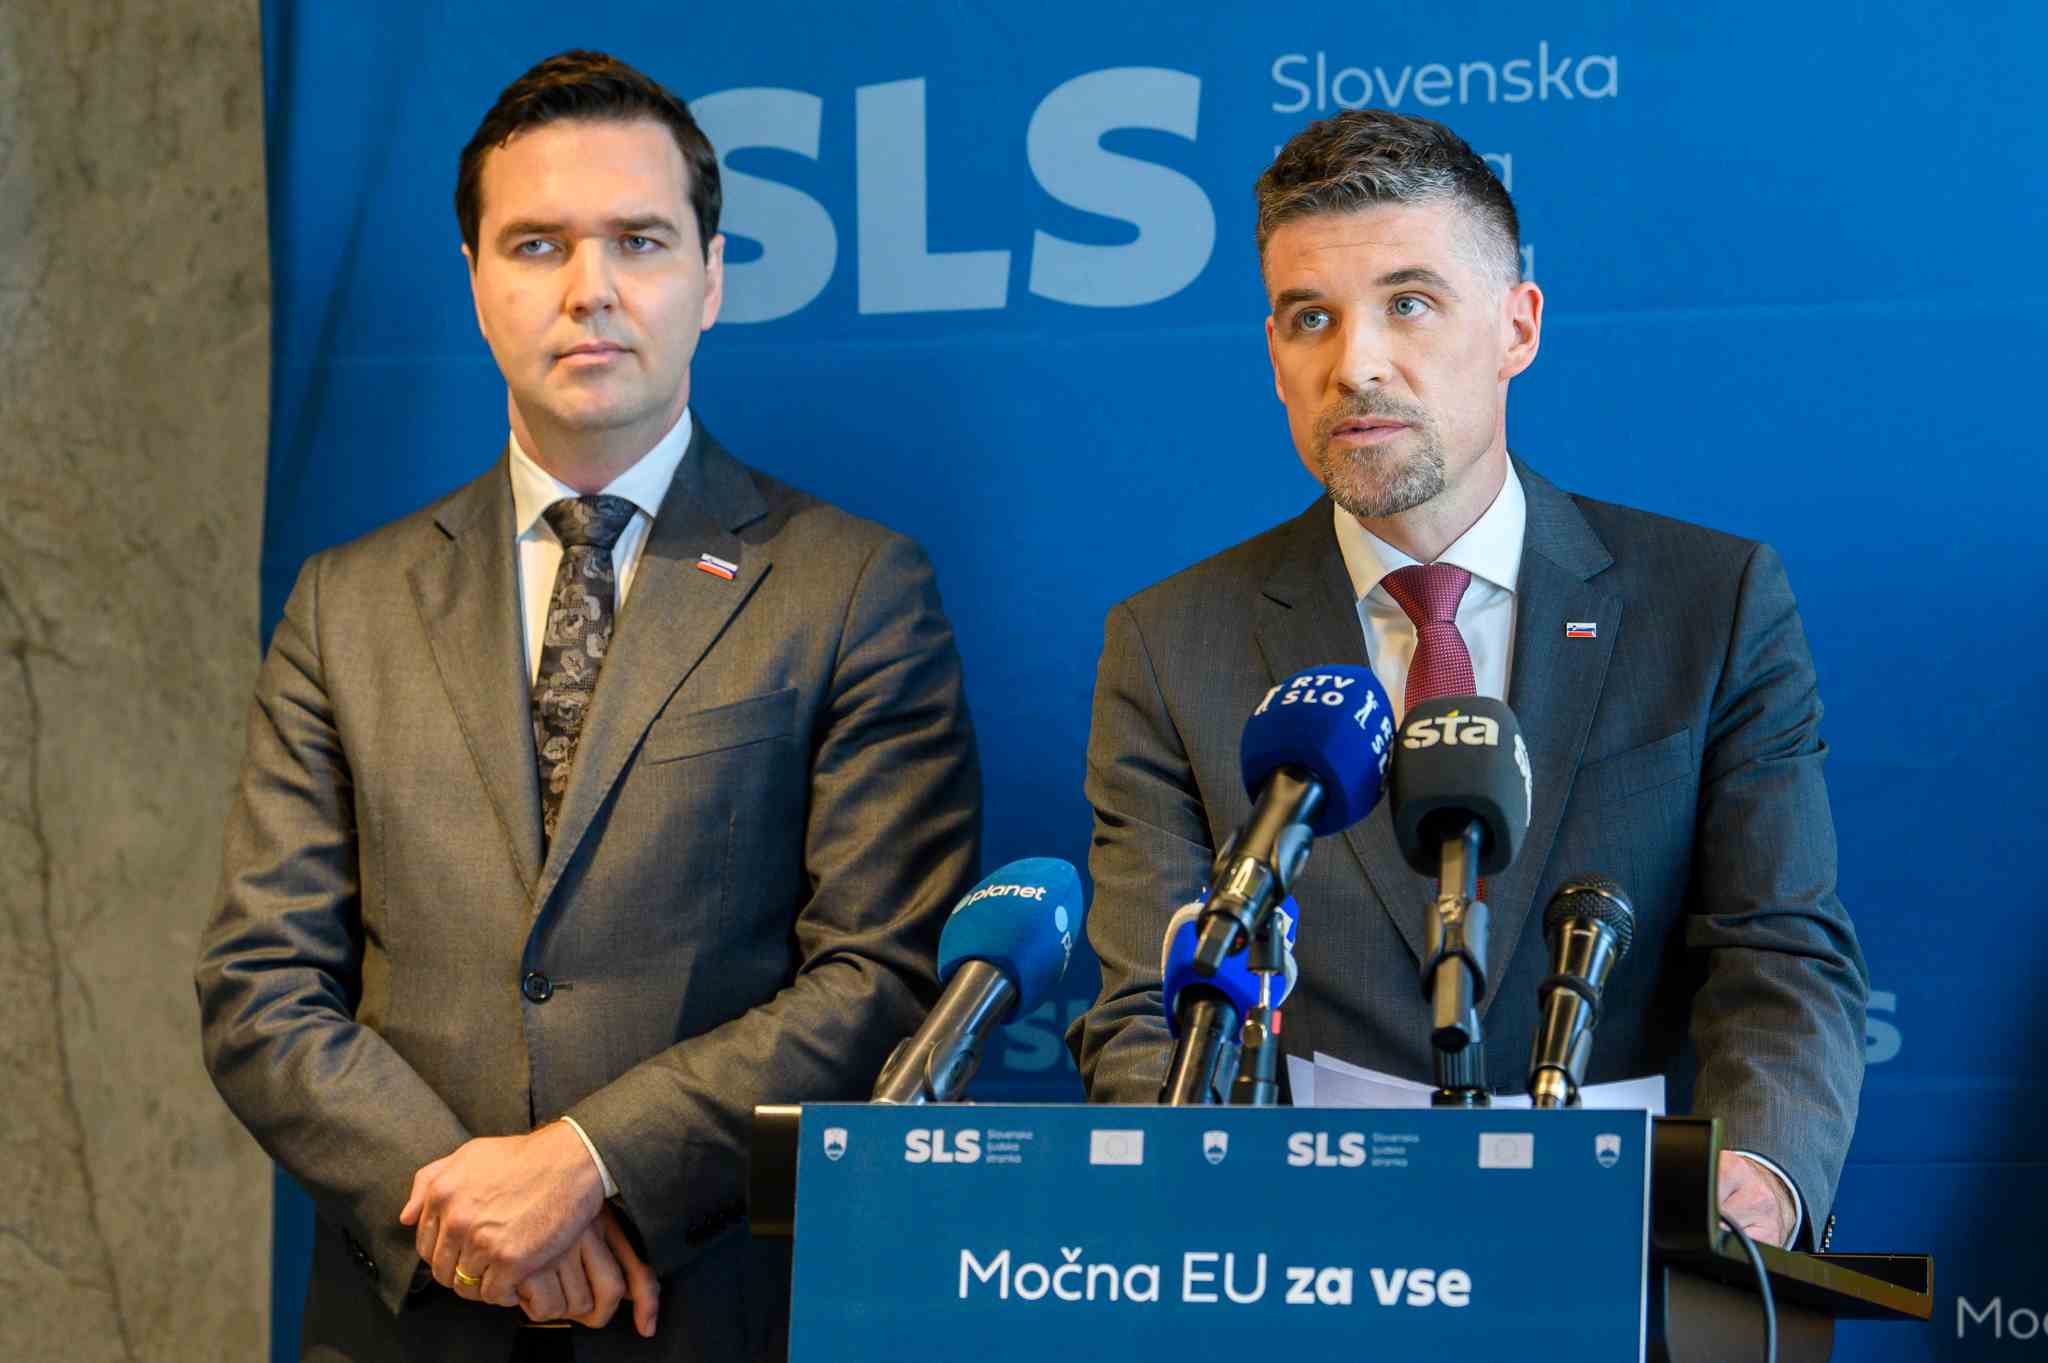 Janez Janša: “Da ne bo nejasnosti. Stranka (tokrat) SDS podpira povezavo in/ali združitev Nove Slovenije in stranke SLS” – Kratka zgodovina združevanja SLS in NSi